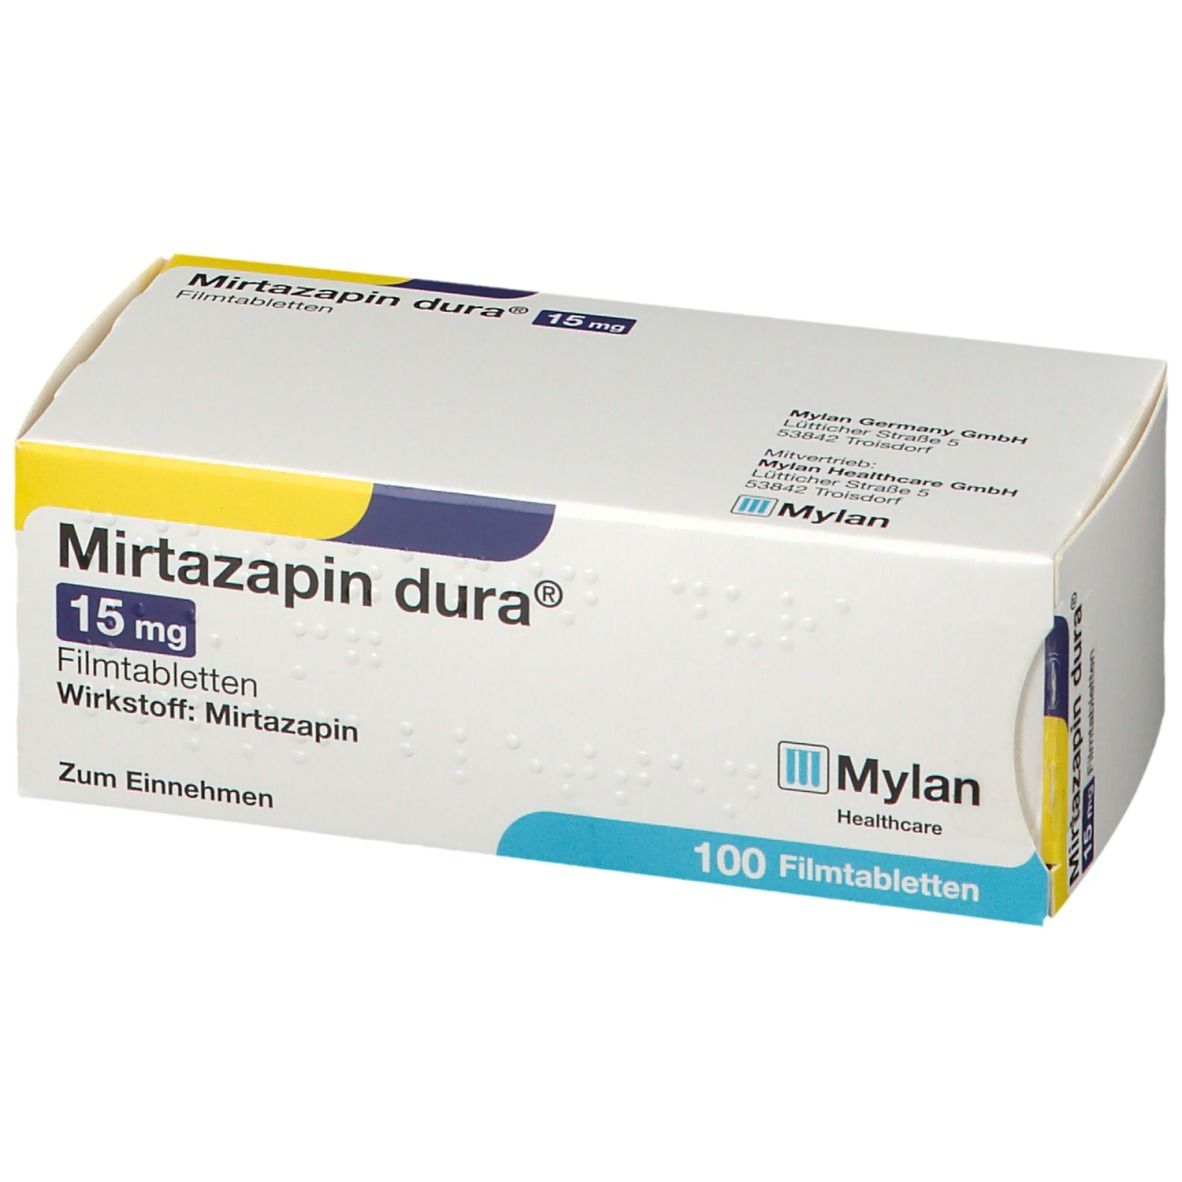 Mirtazapin dura® 15 mg